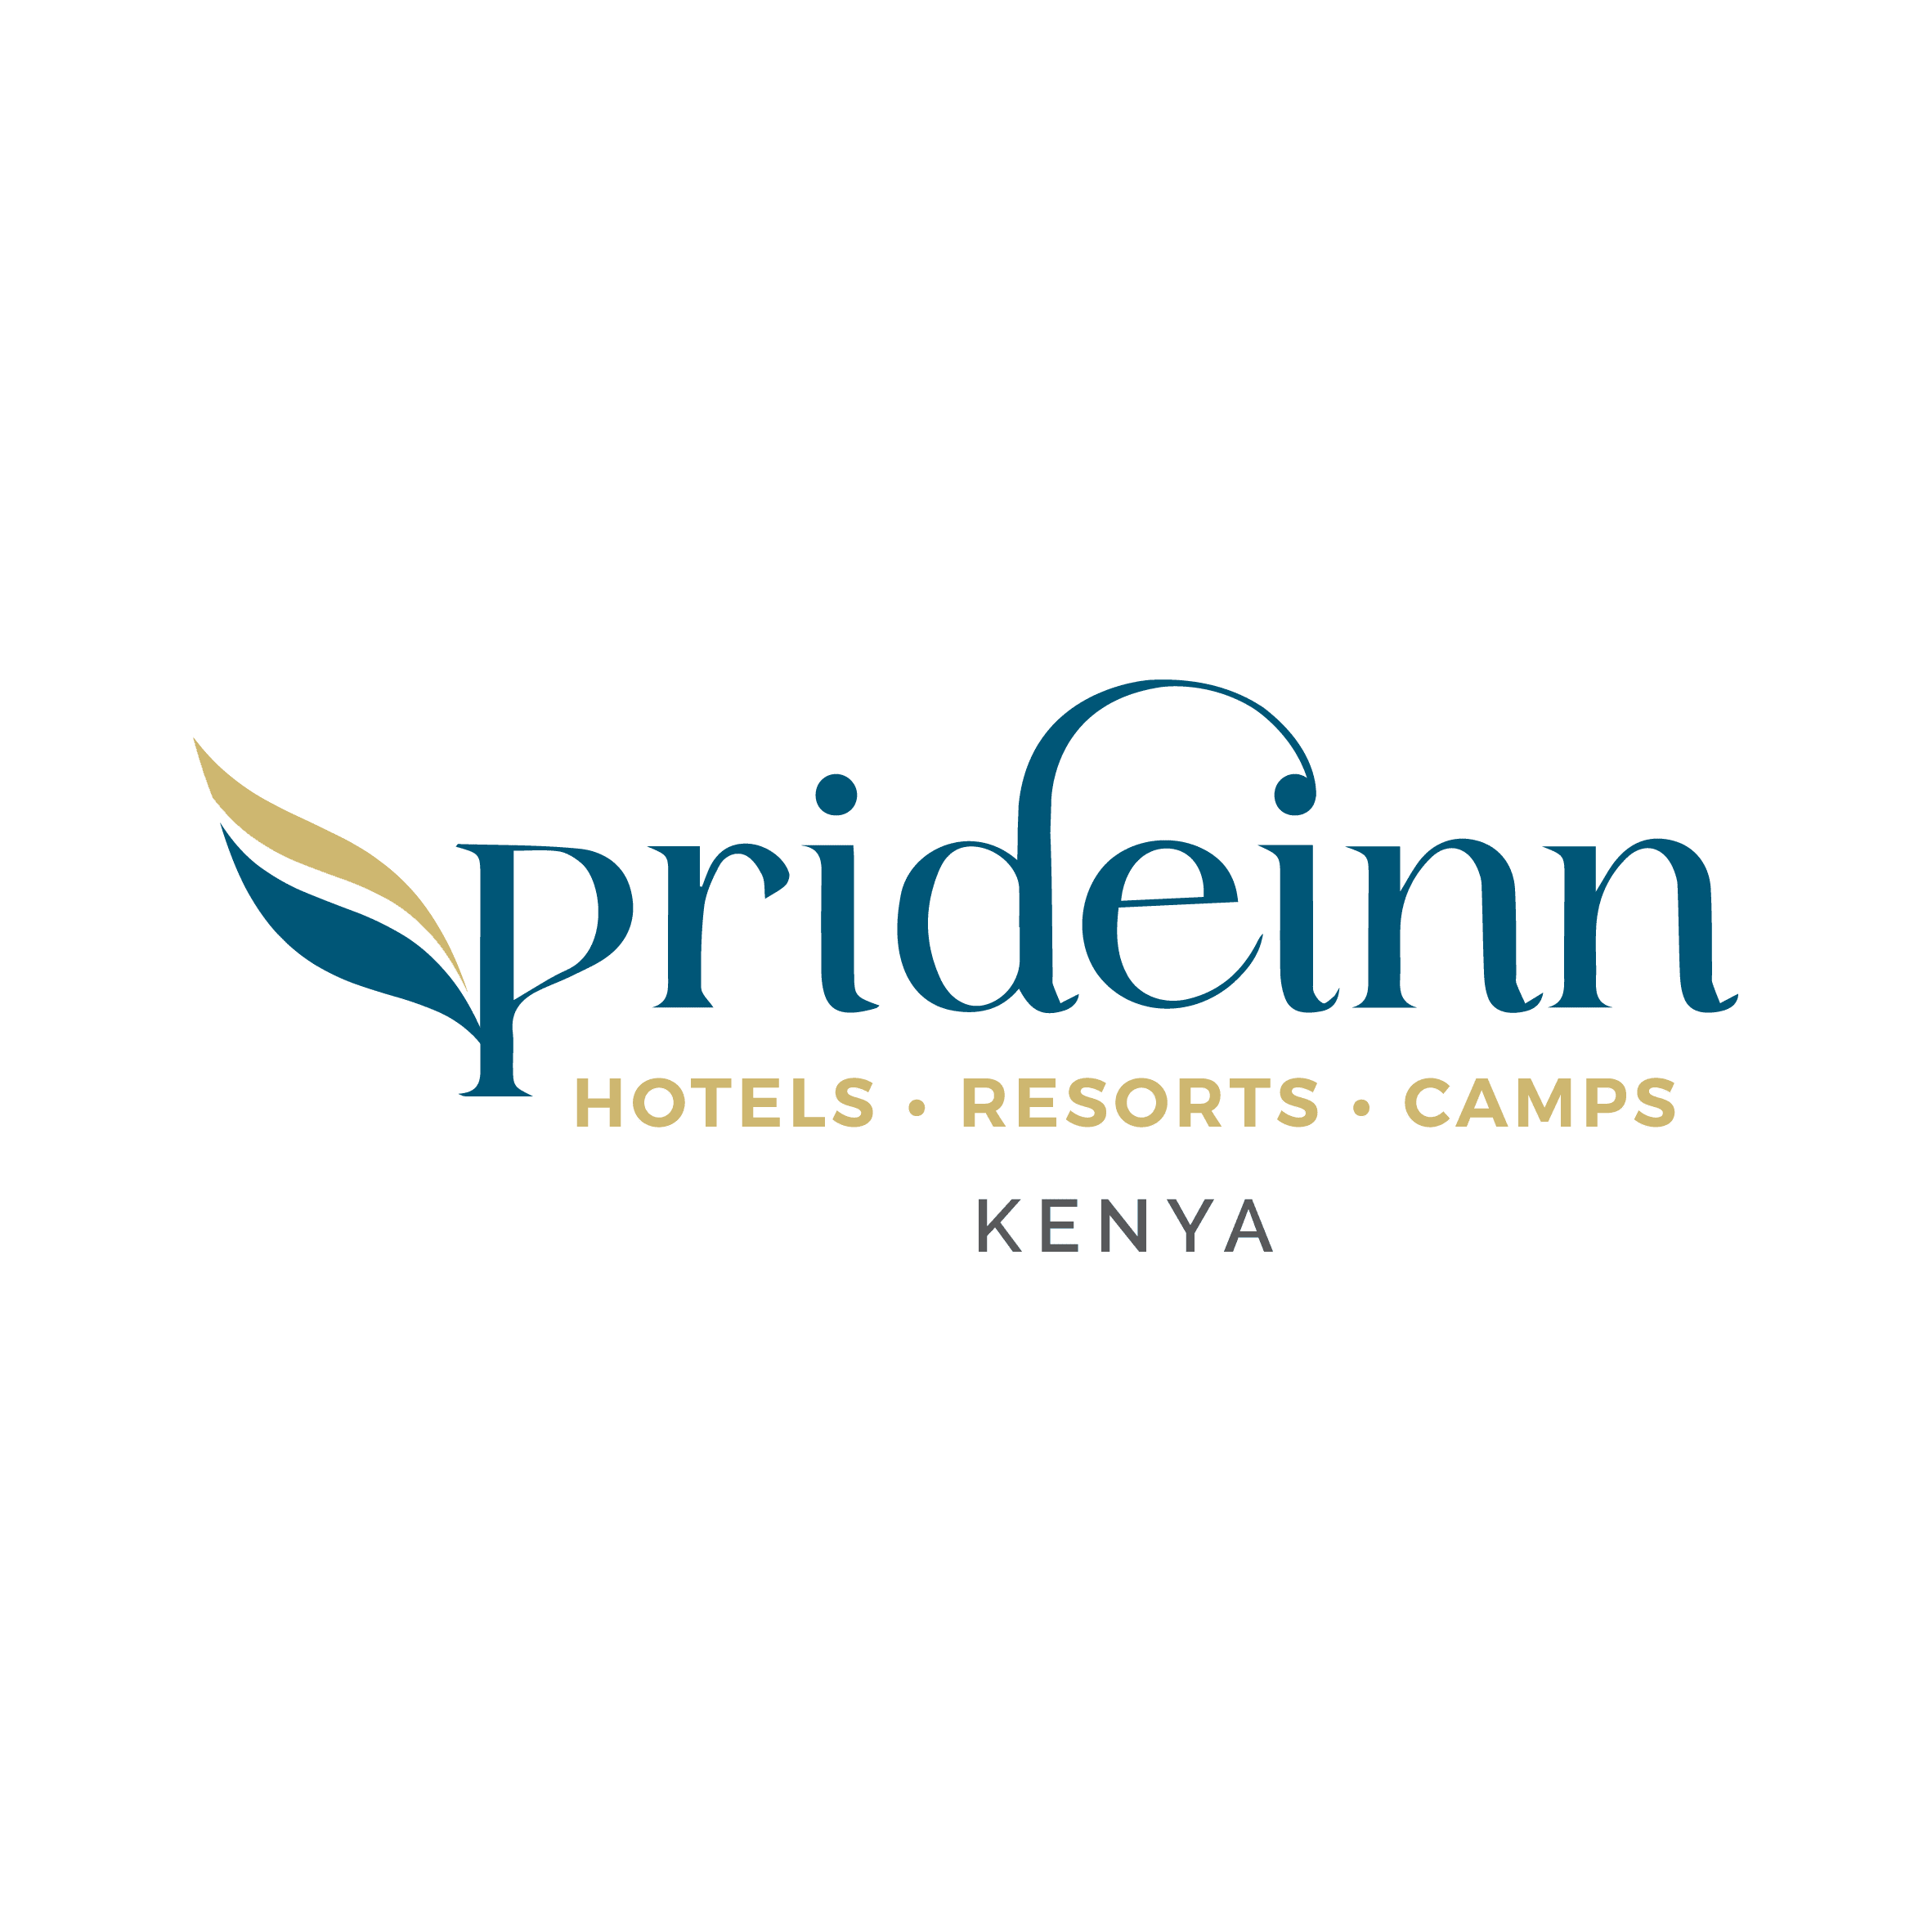 PrideInn, Best Hotels in Kenya